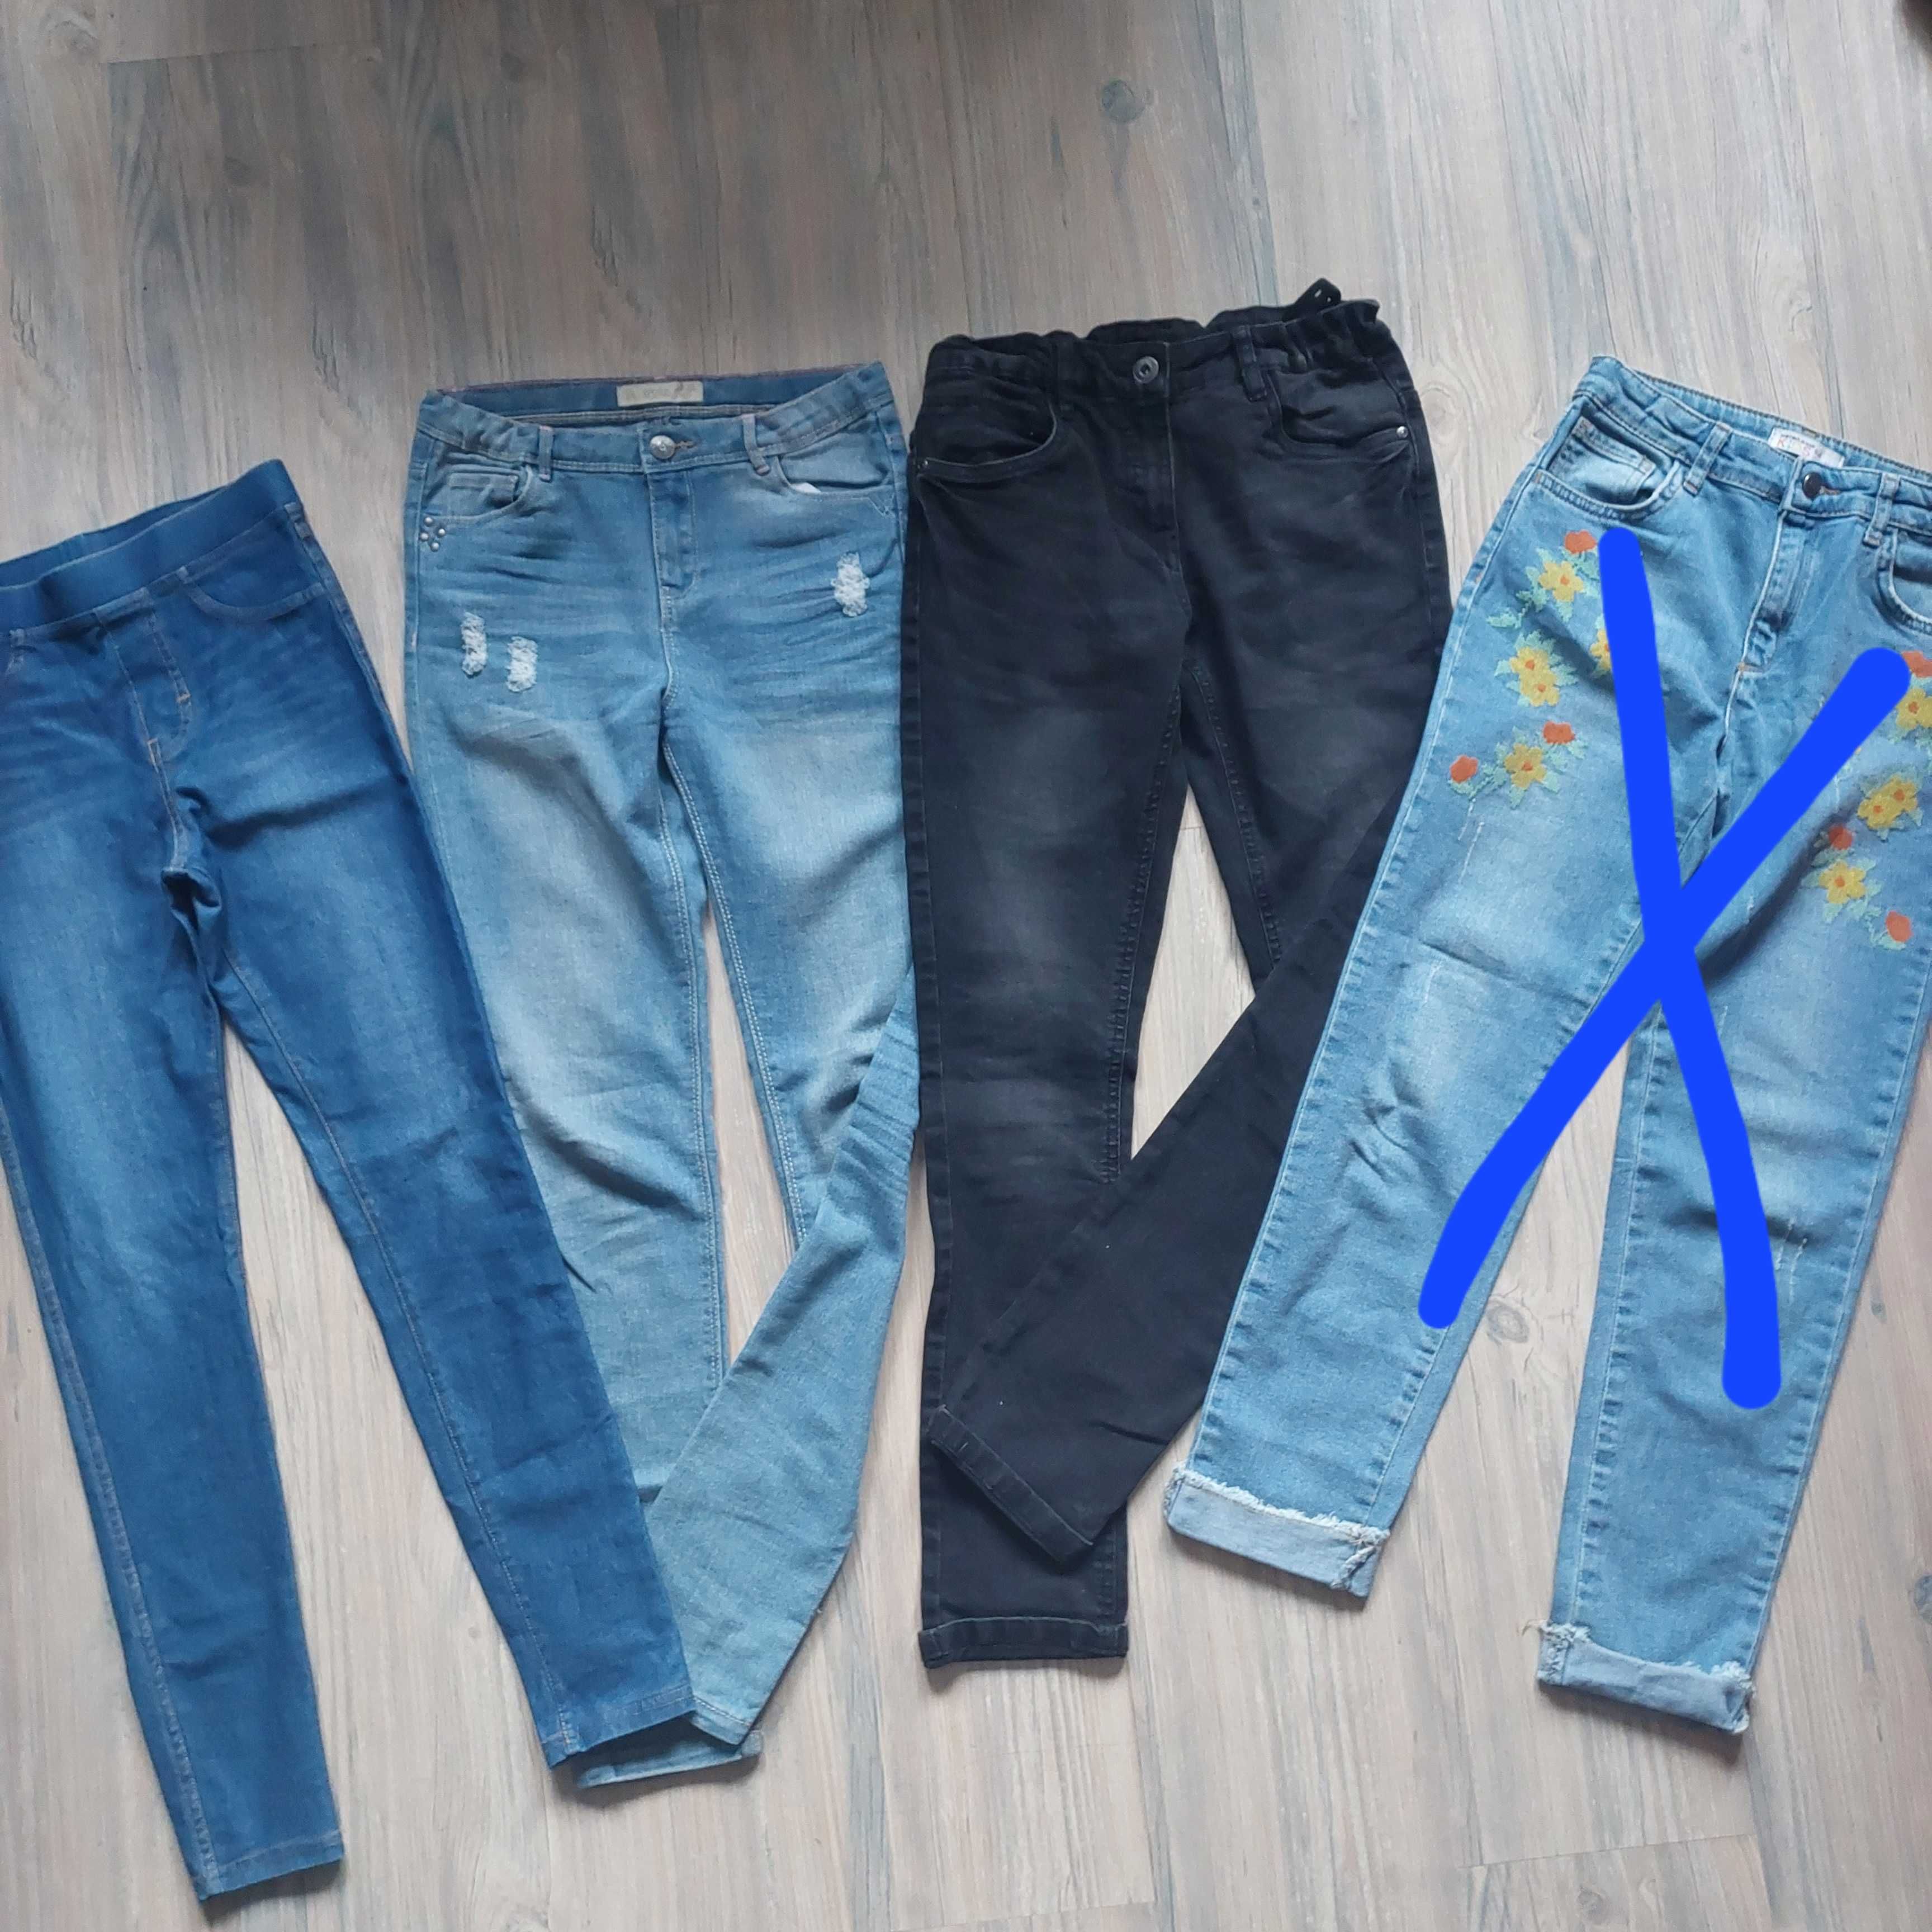 Пакет джинсовых вещей( куртка, сарафан, джинсы, джеггинсы) для девочки